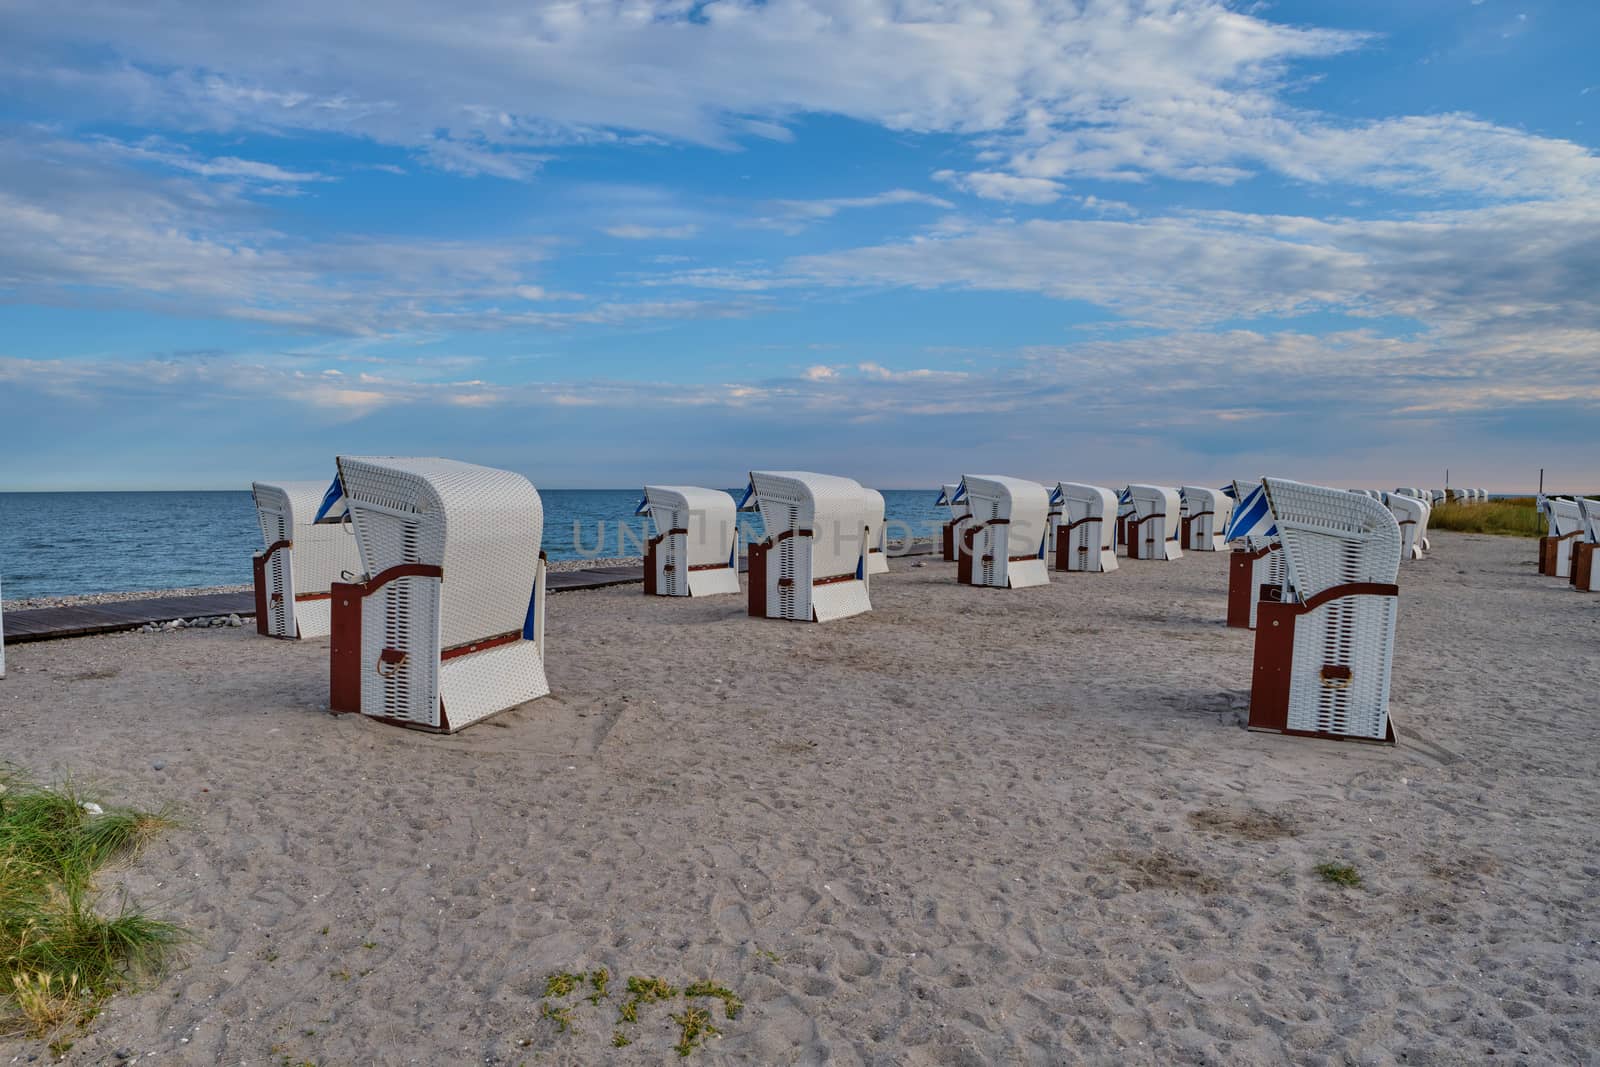 Empty beach cabins on a deserted beach. by Fischeron